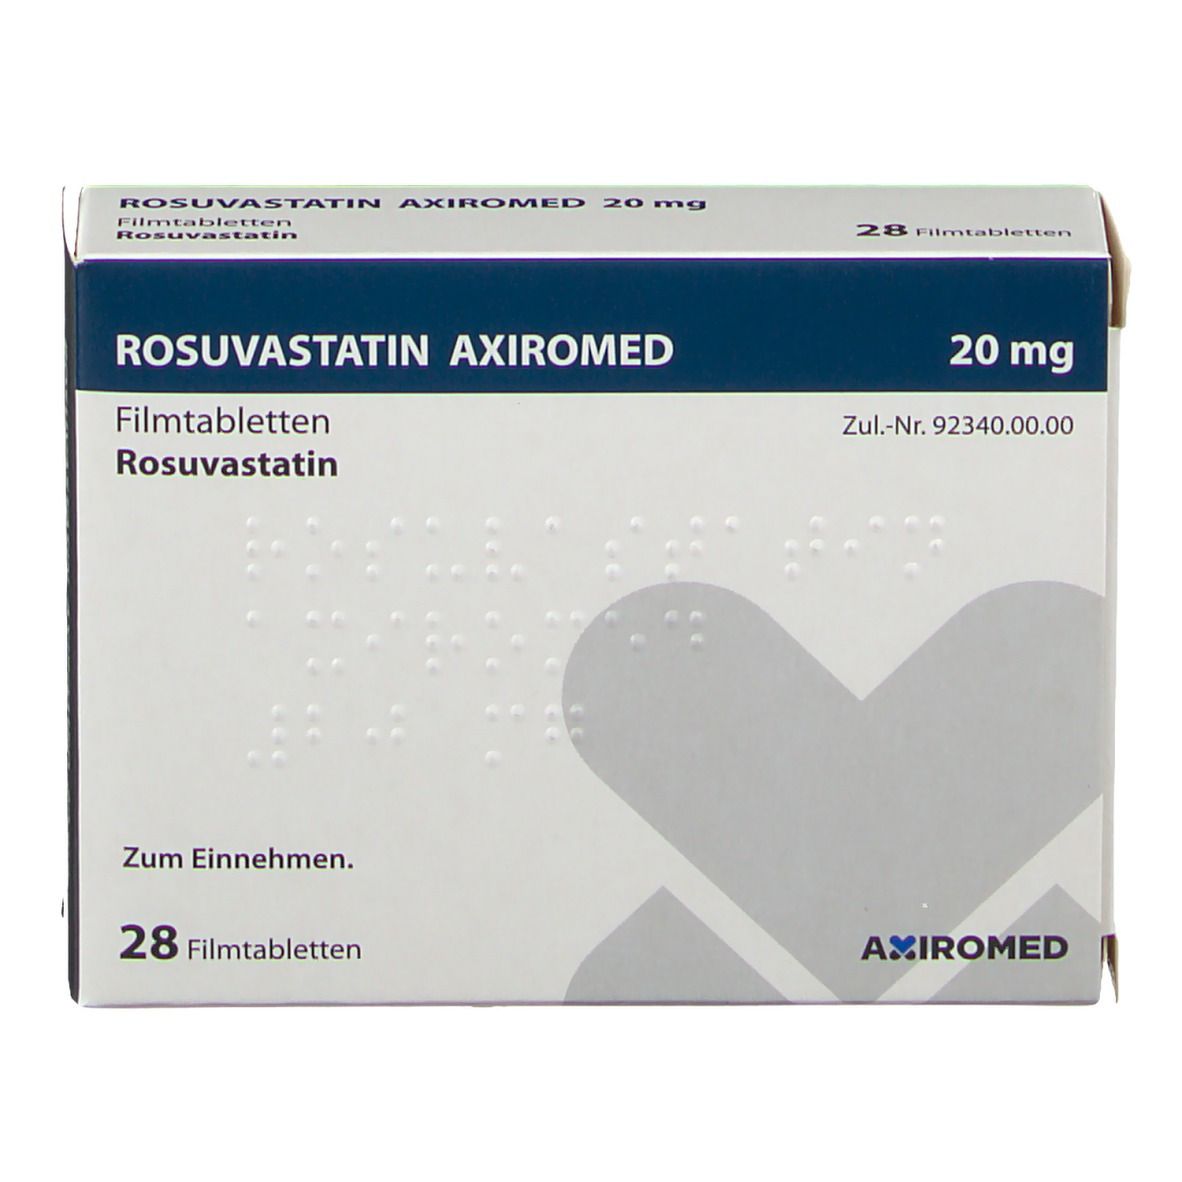 ROSUVASTATIN AXIROMED 20 mg